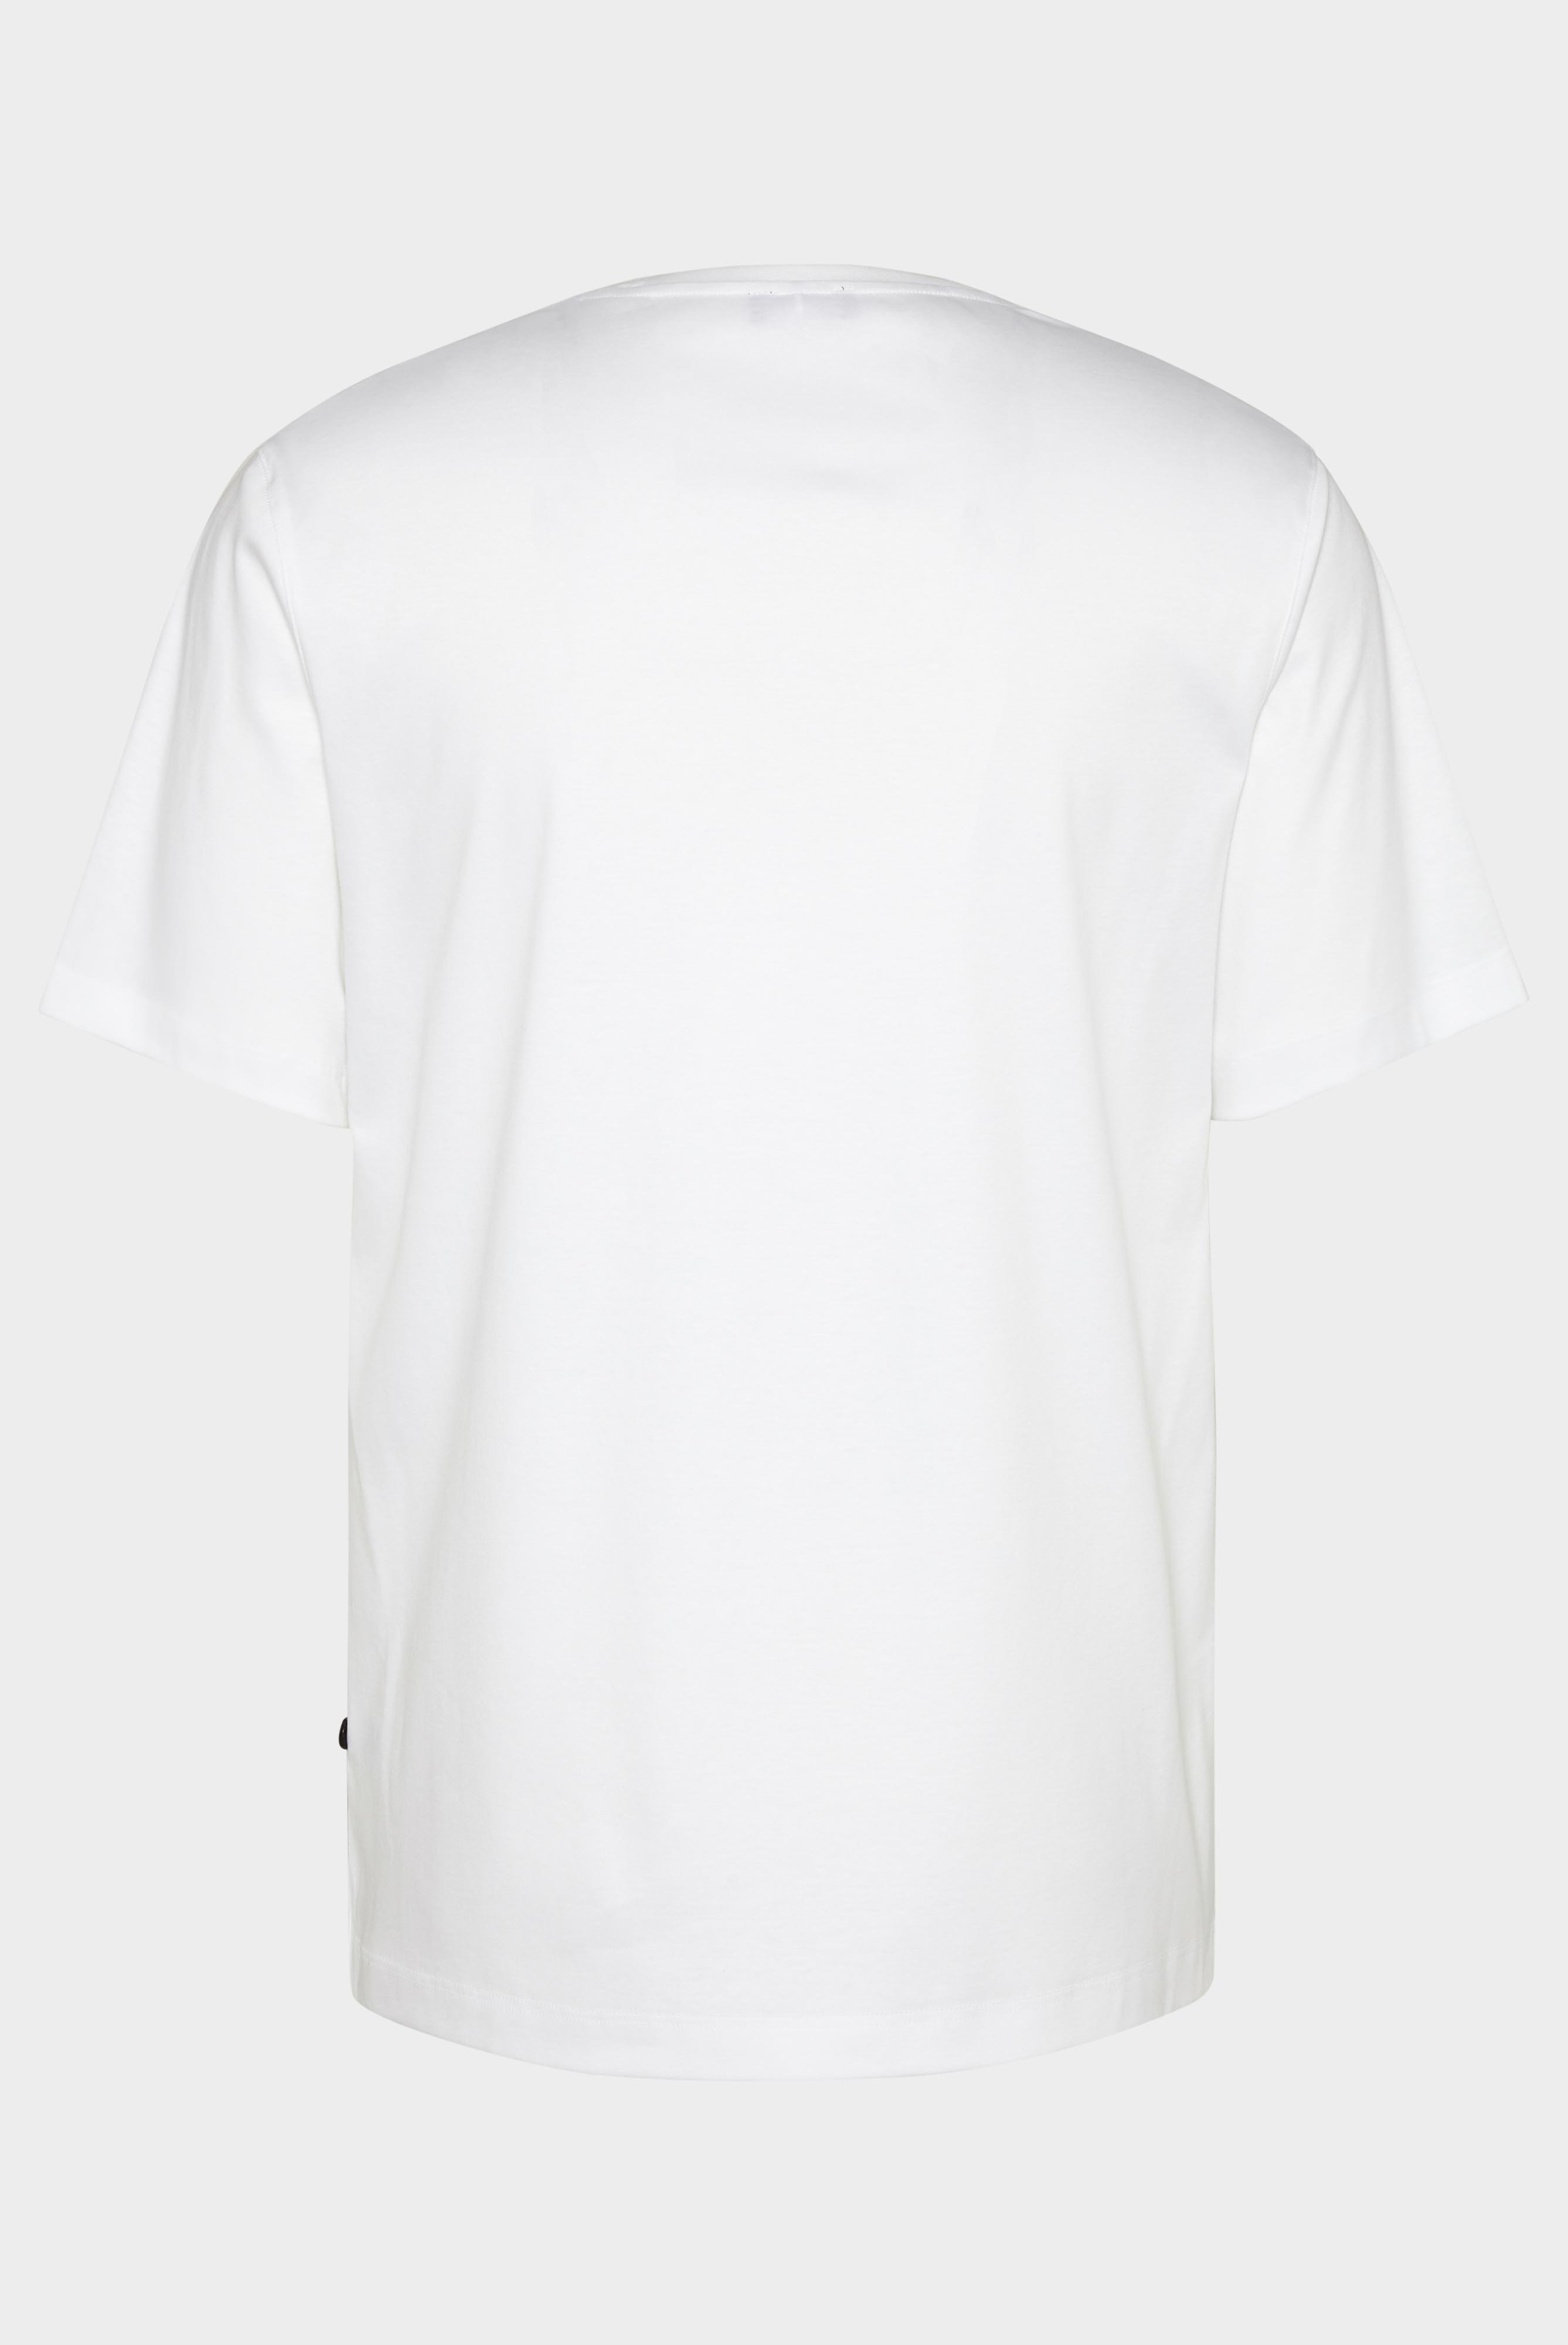 T-Shirts+Oversize Jersey T-Shirt mit Brusttasche+20.1776.GZ.180031.000.S